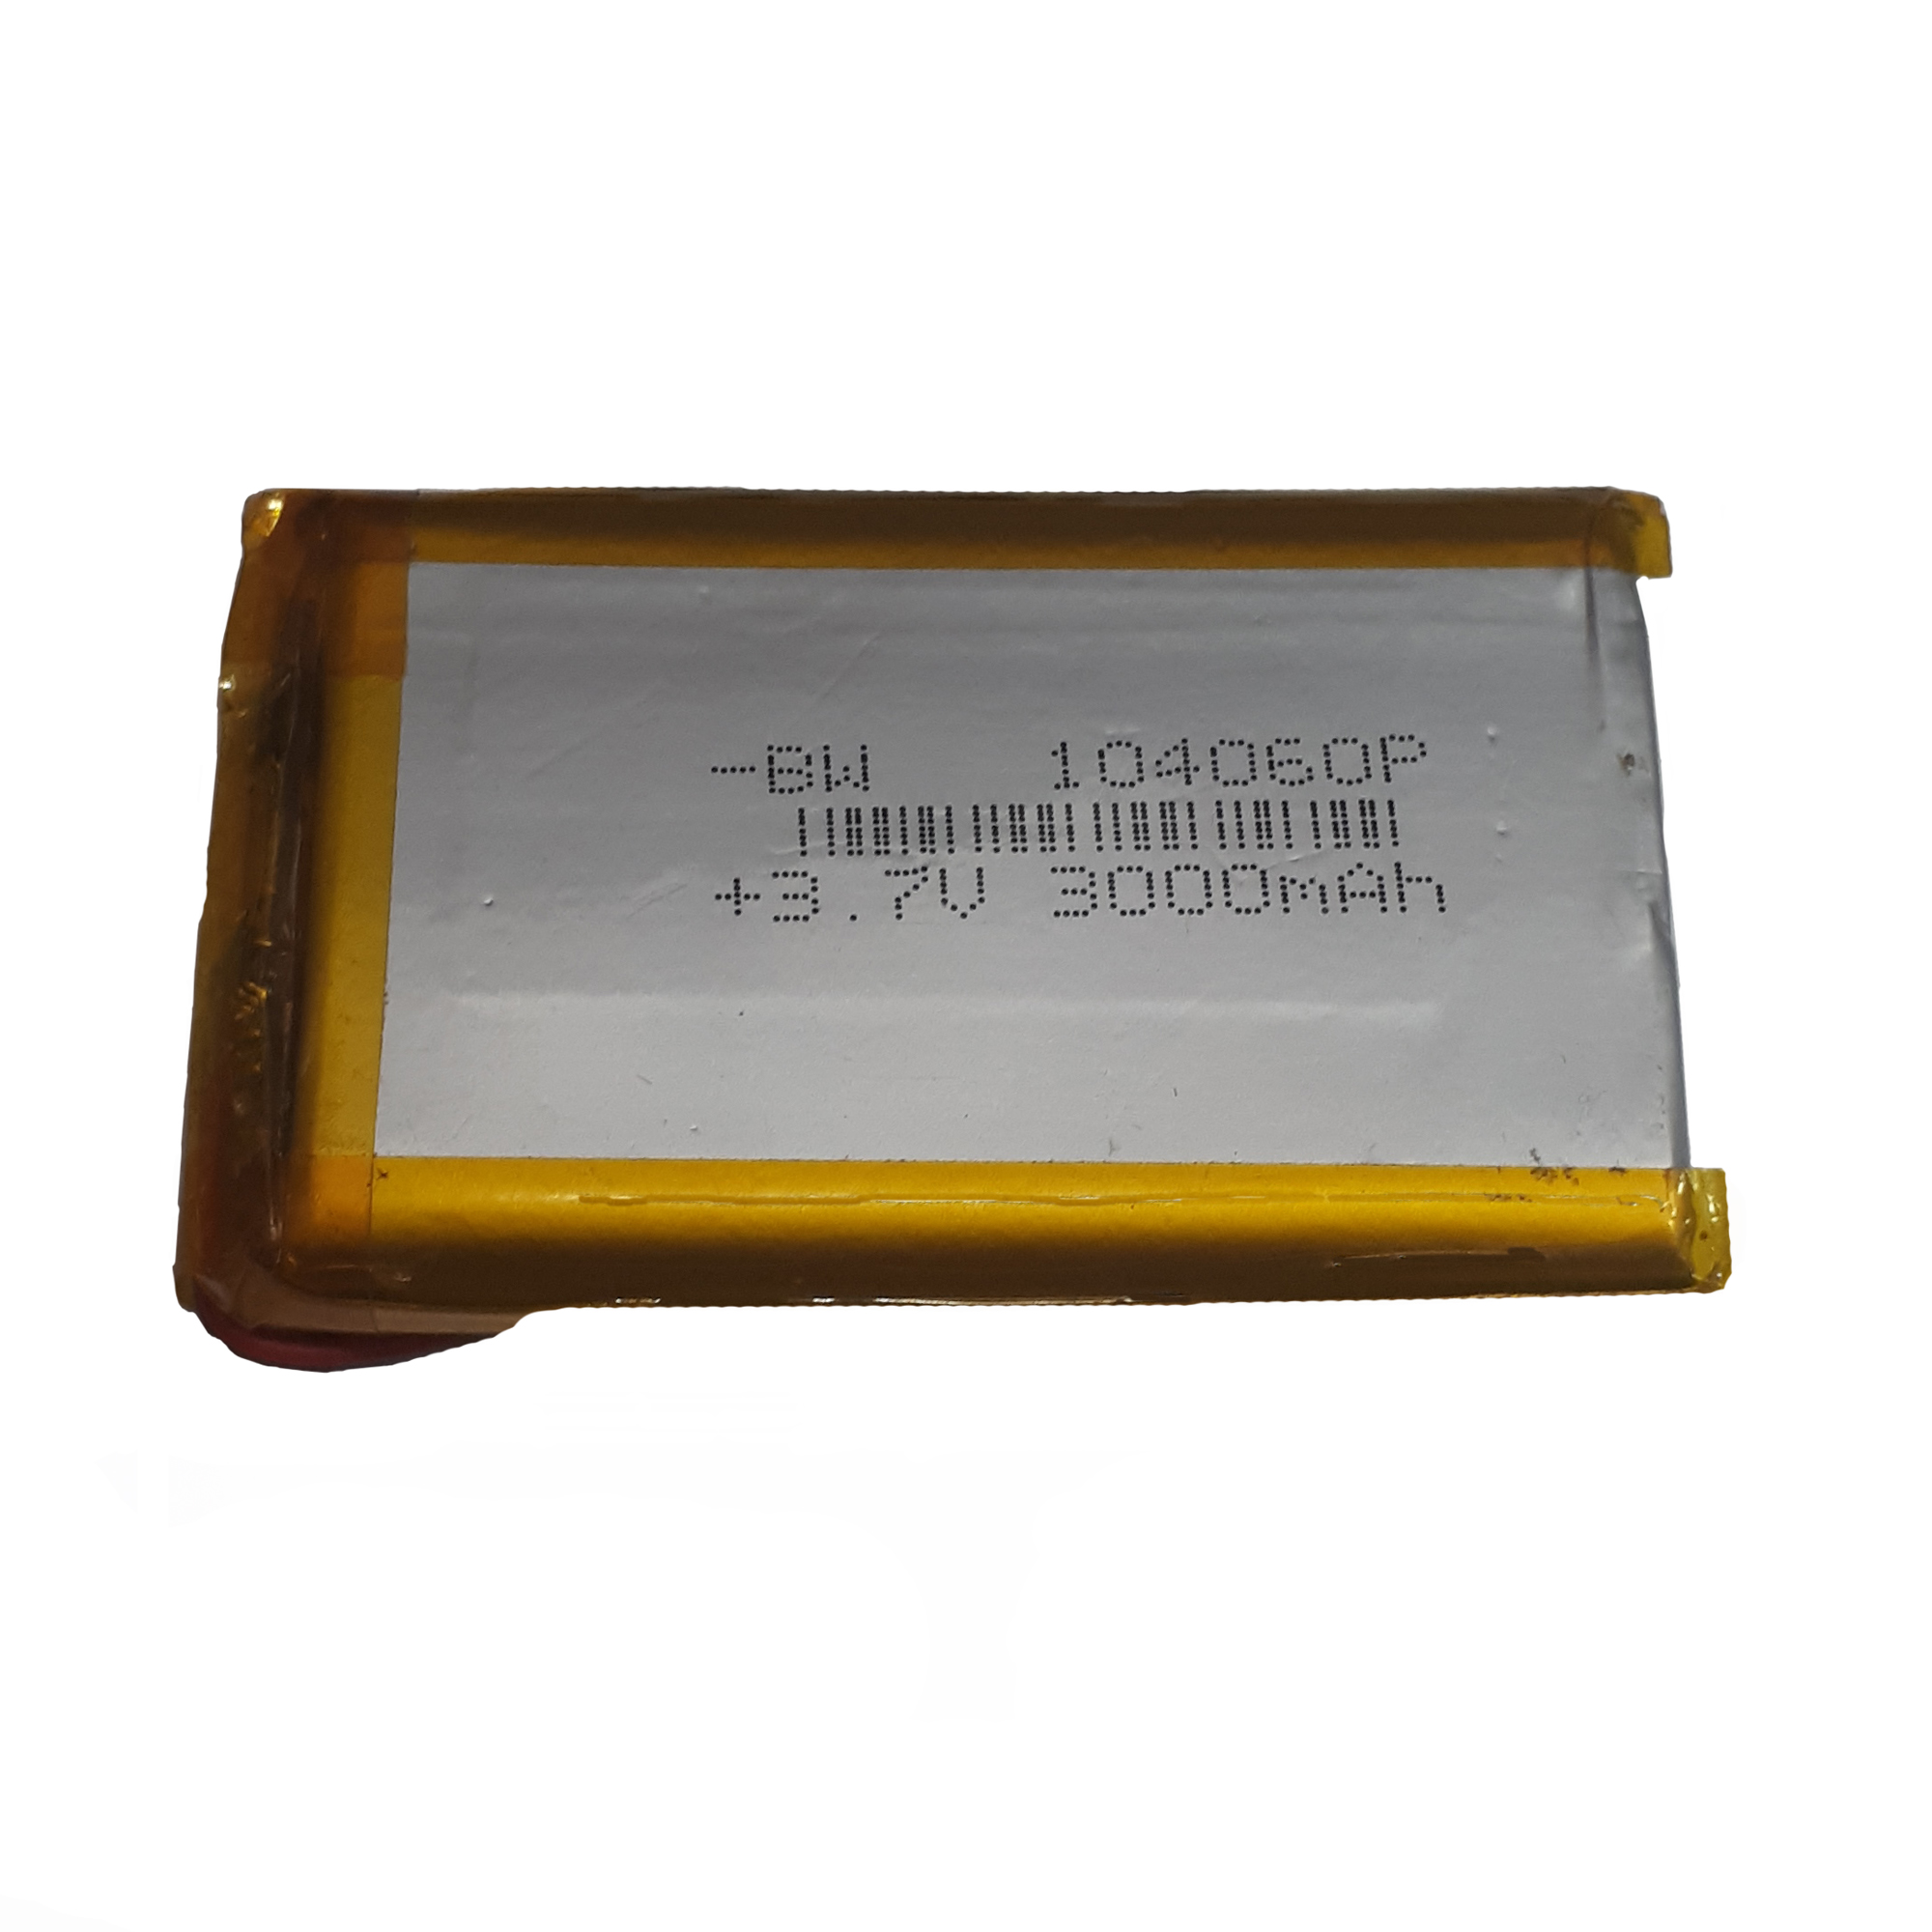 باتری لیتیوم-یون کد 104060p ظرفیت 3000 میلی آمپر ساعت 